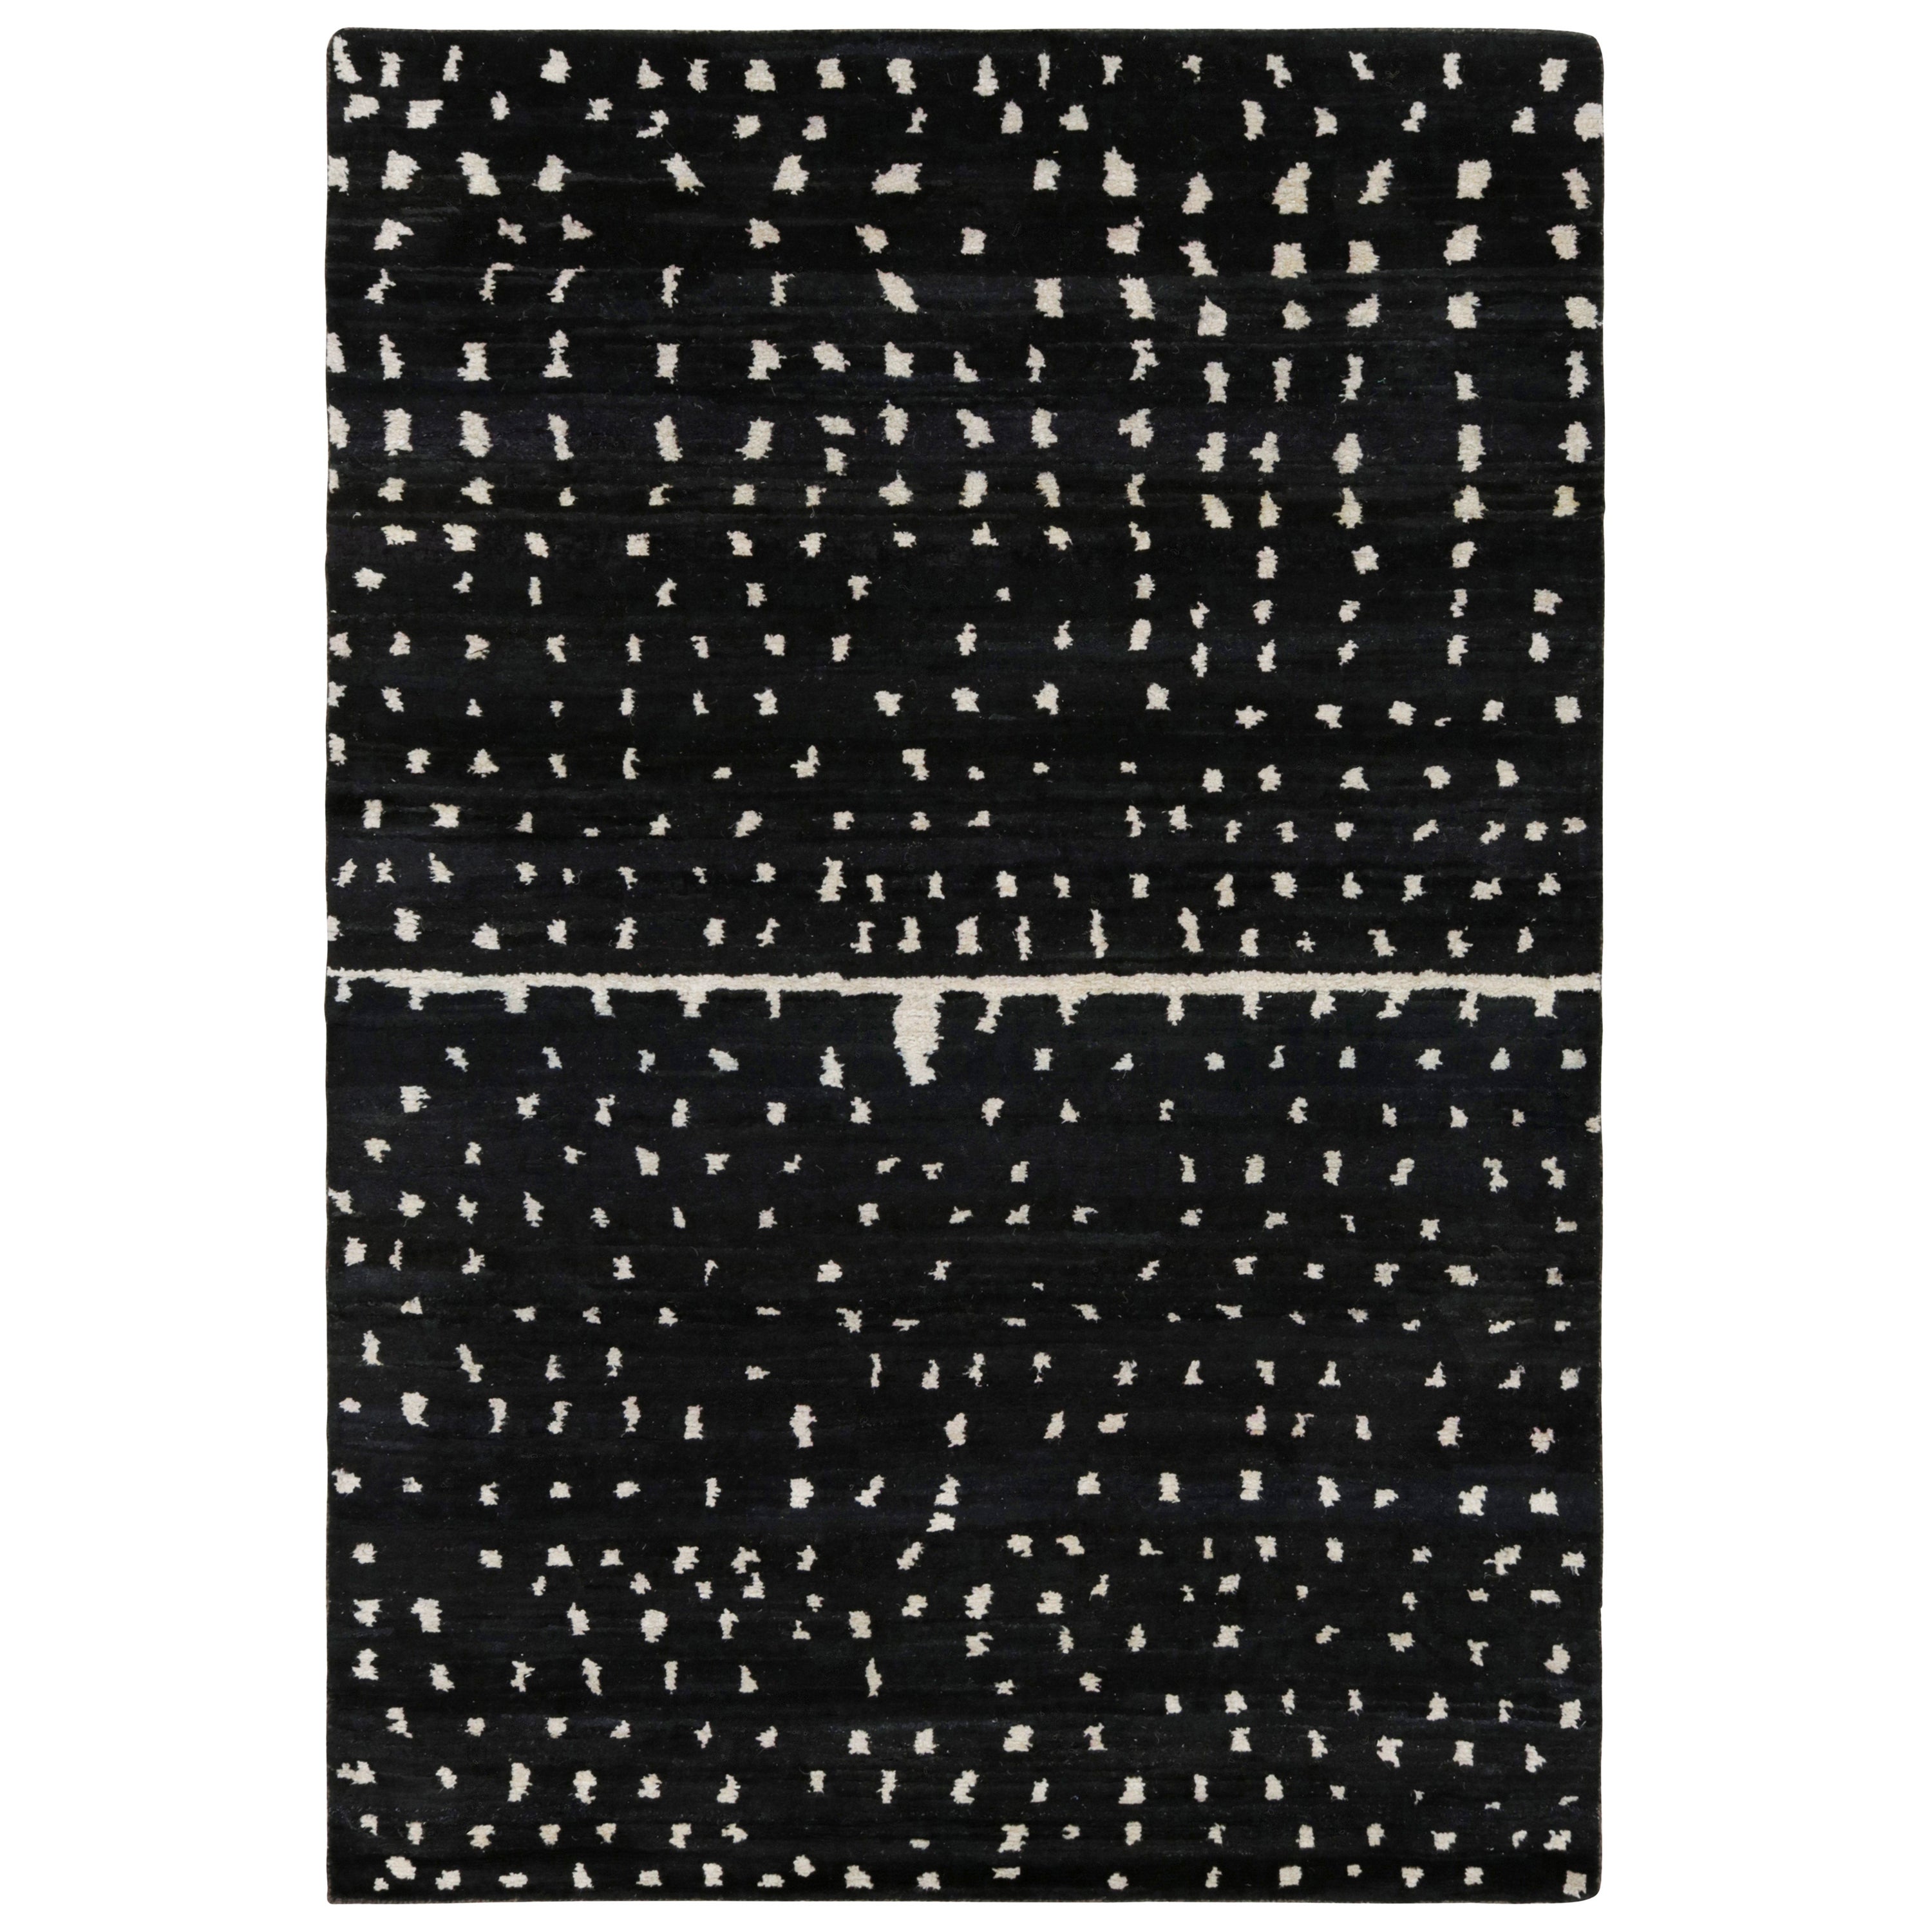 Rug & Kilim's Modern Moroccan Style Rug in schwarz-weißem geometrischem Muster